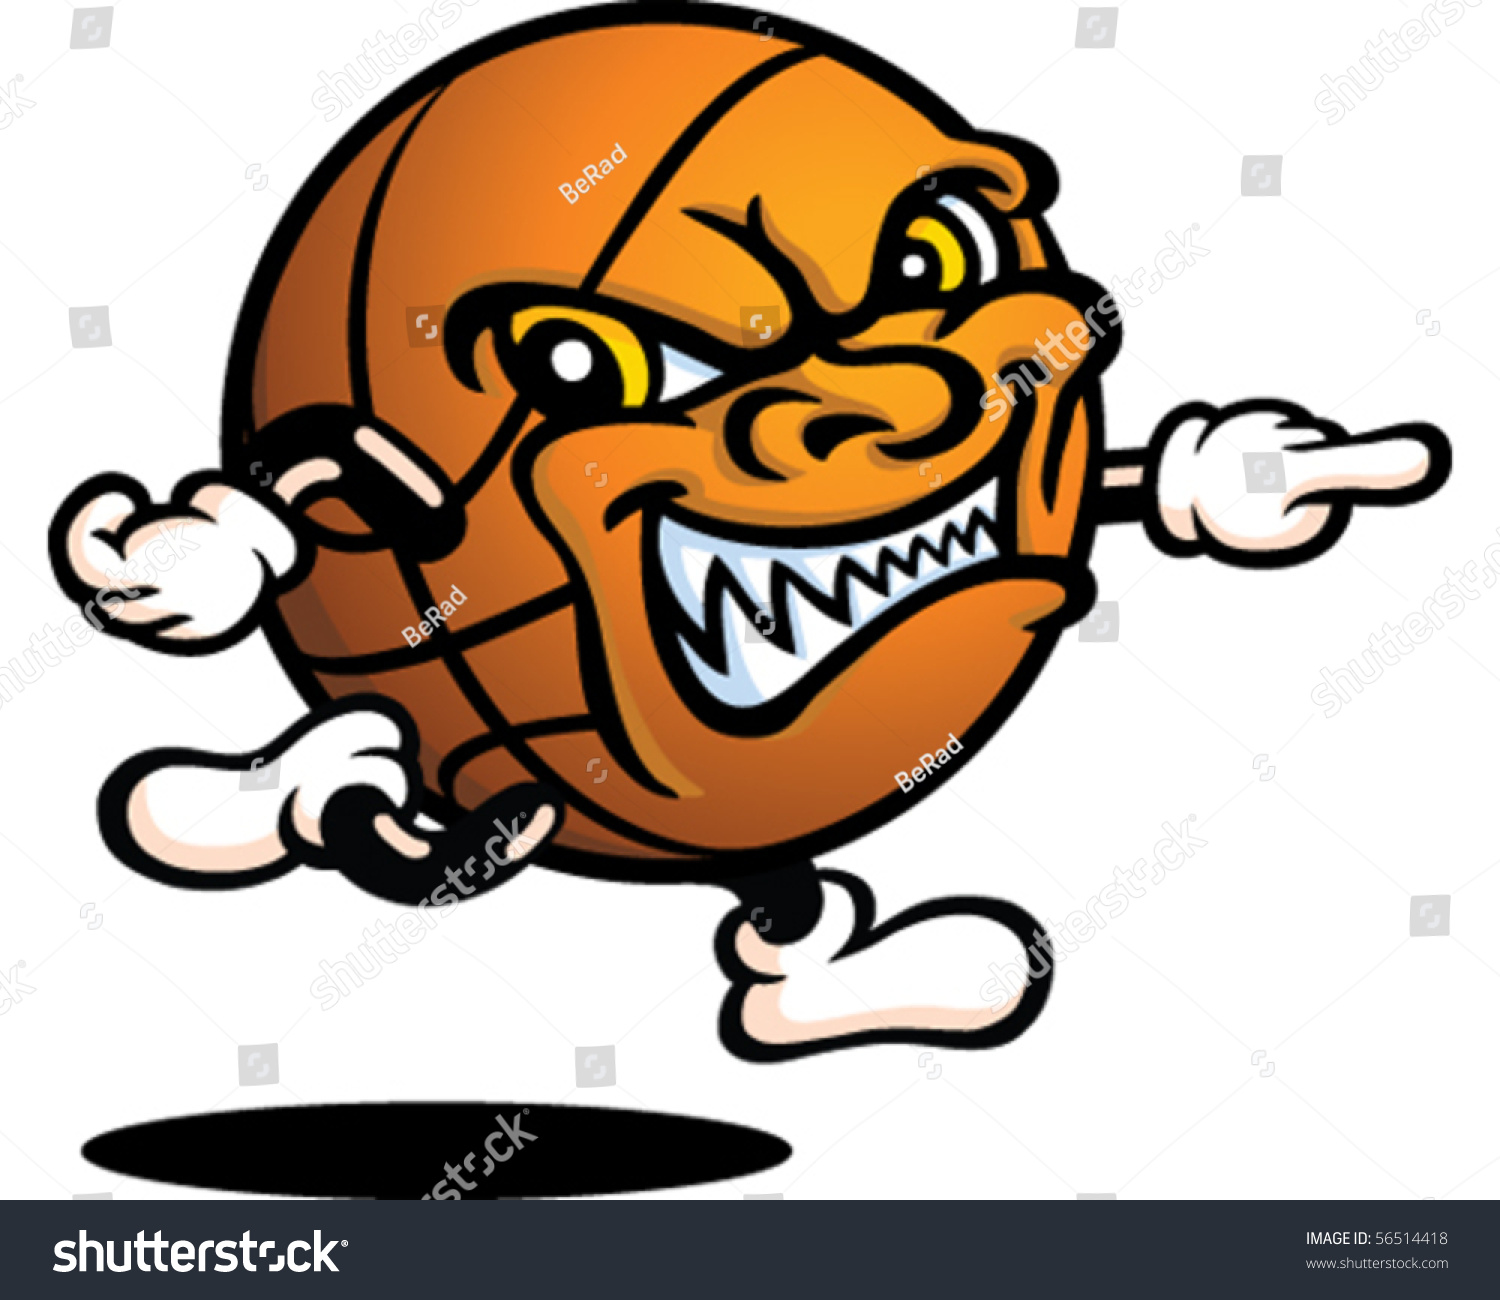 Evil Basketball Stock Vector Illustration 56514418 : Shutterstock